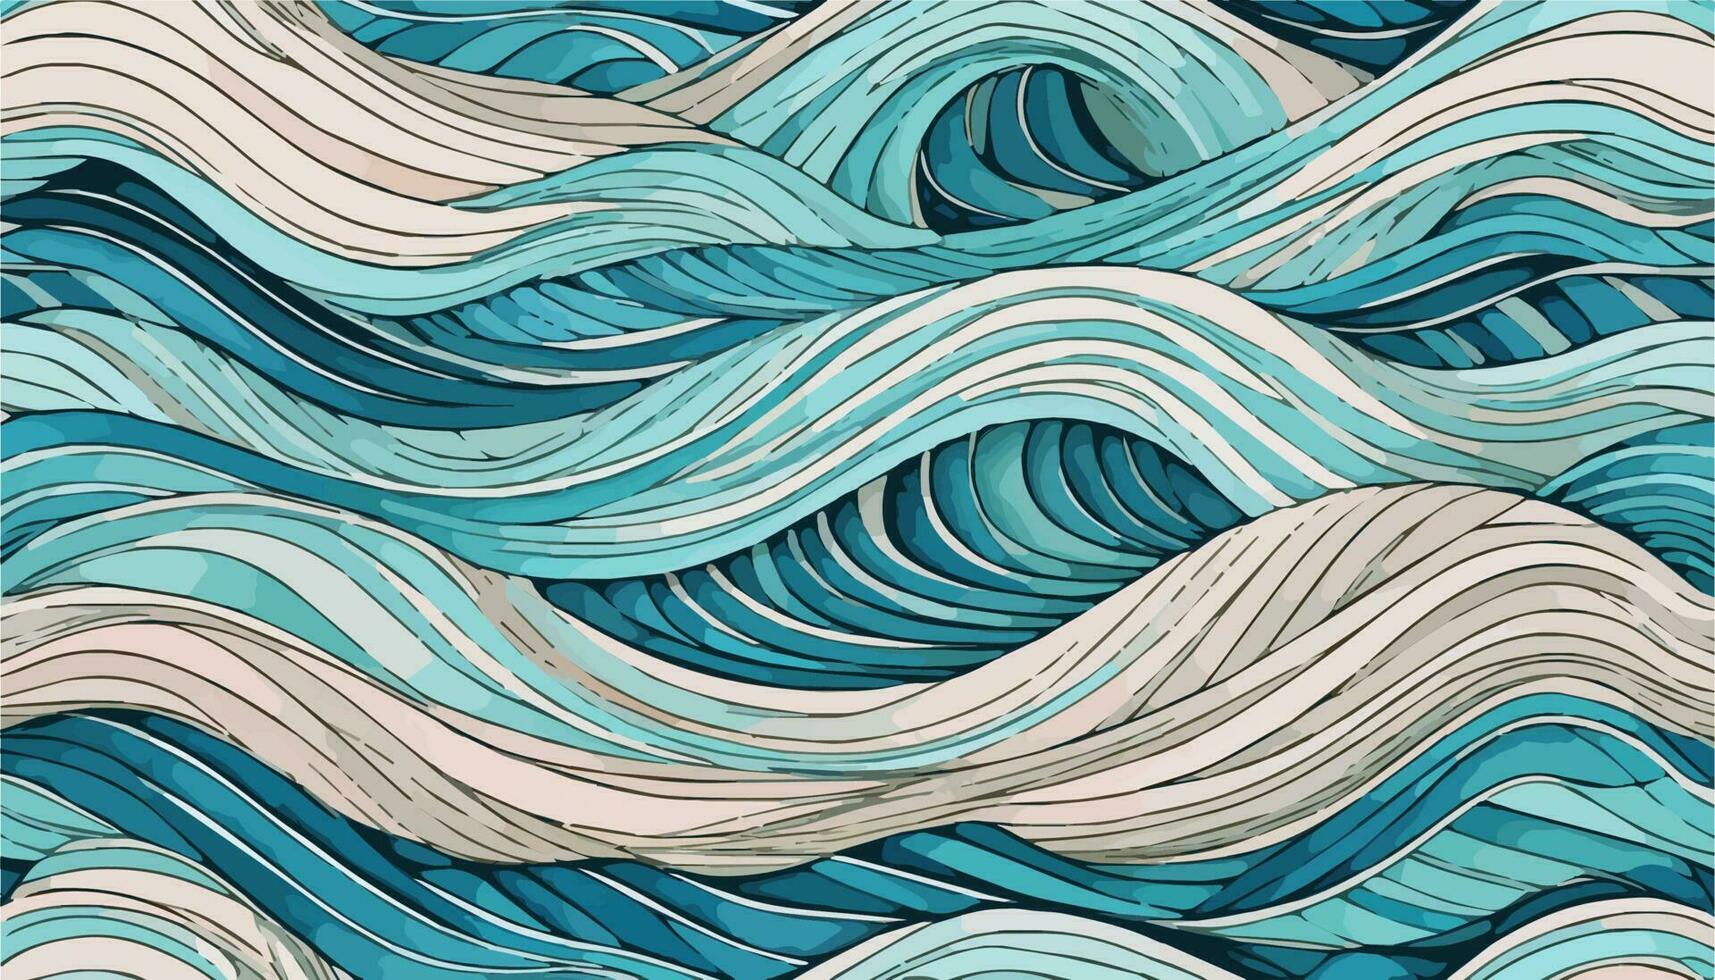 abstract hand getekend waterverf golven achtergrond. vector illustratie. abstract kunst achtergrond met kromme patroon vector. lijn Golf patroon in luxe, Japans patroon stijl.